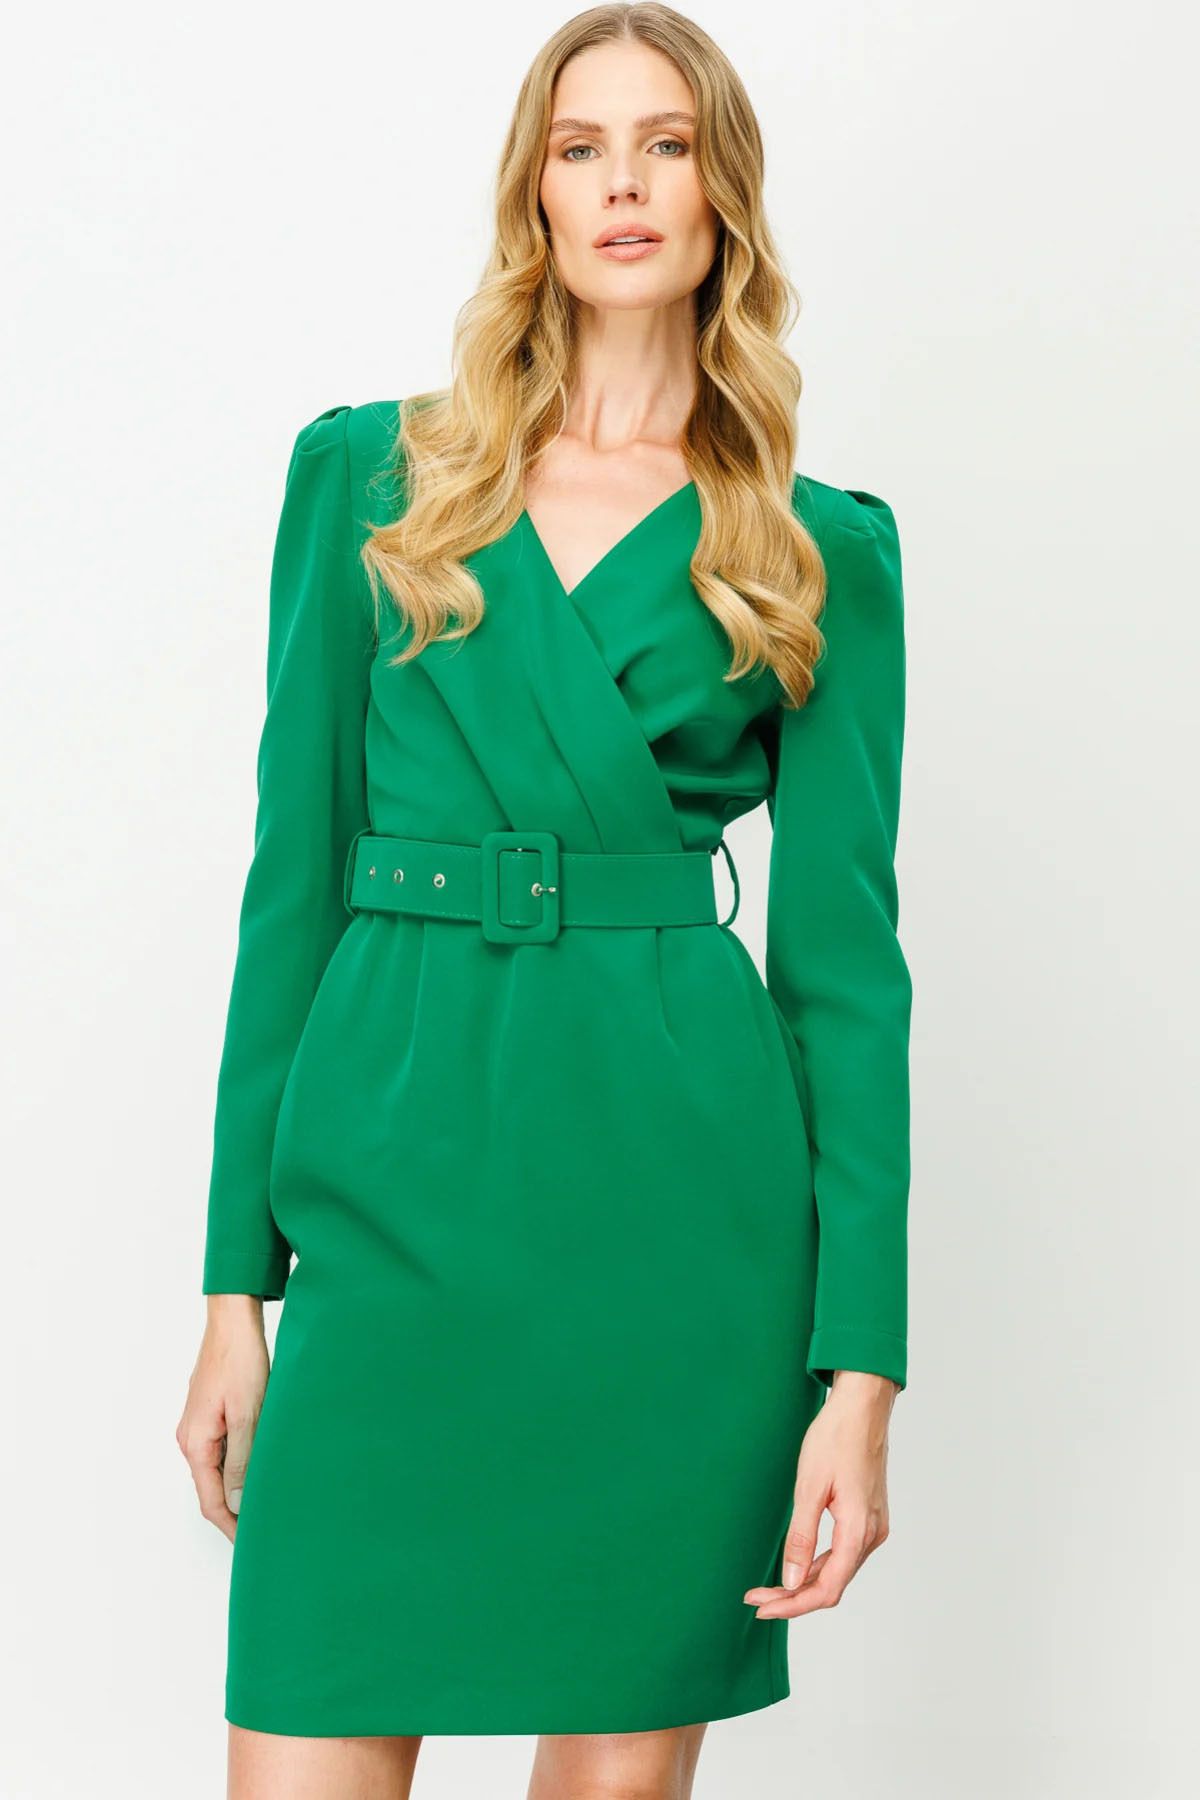 Ekol Kadın Kruvaze Kemerli Elbise 5025 Yeşil